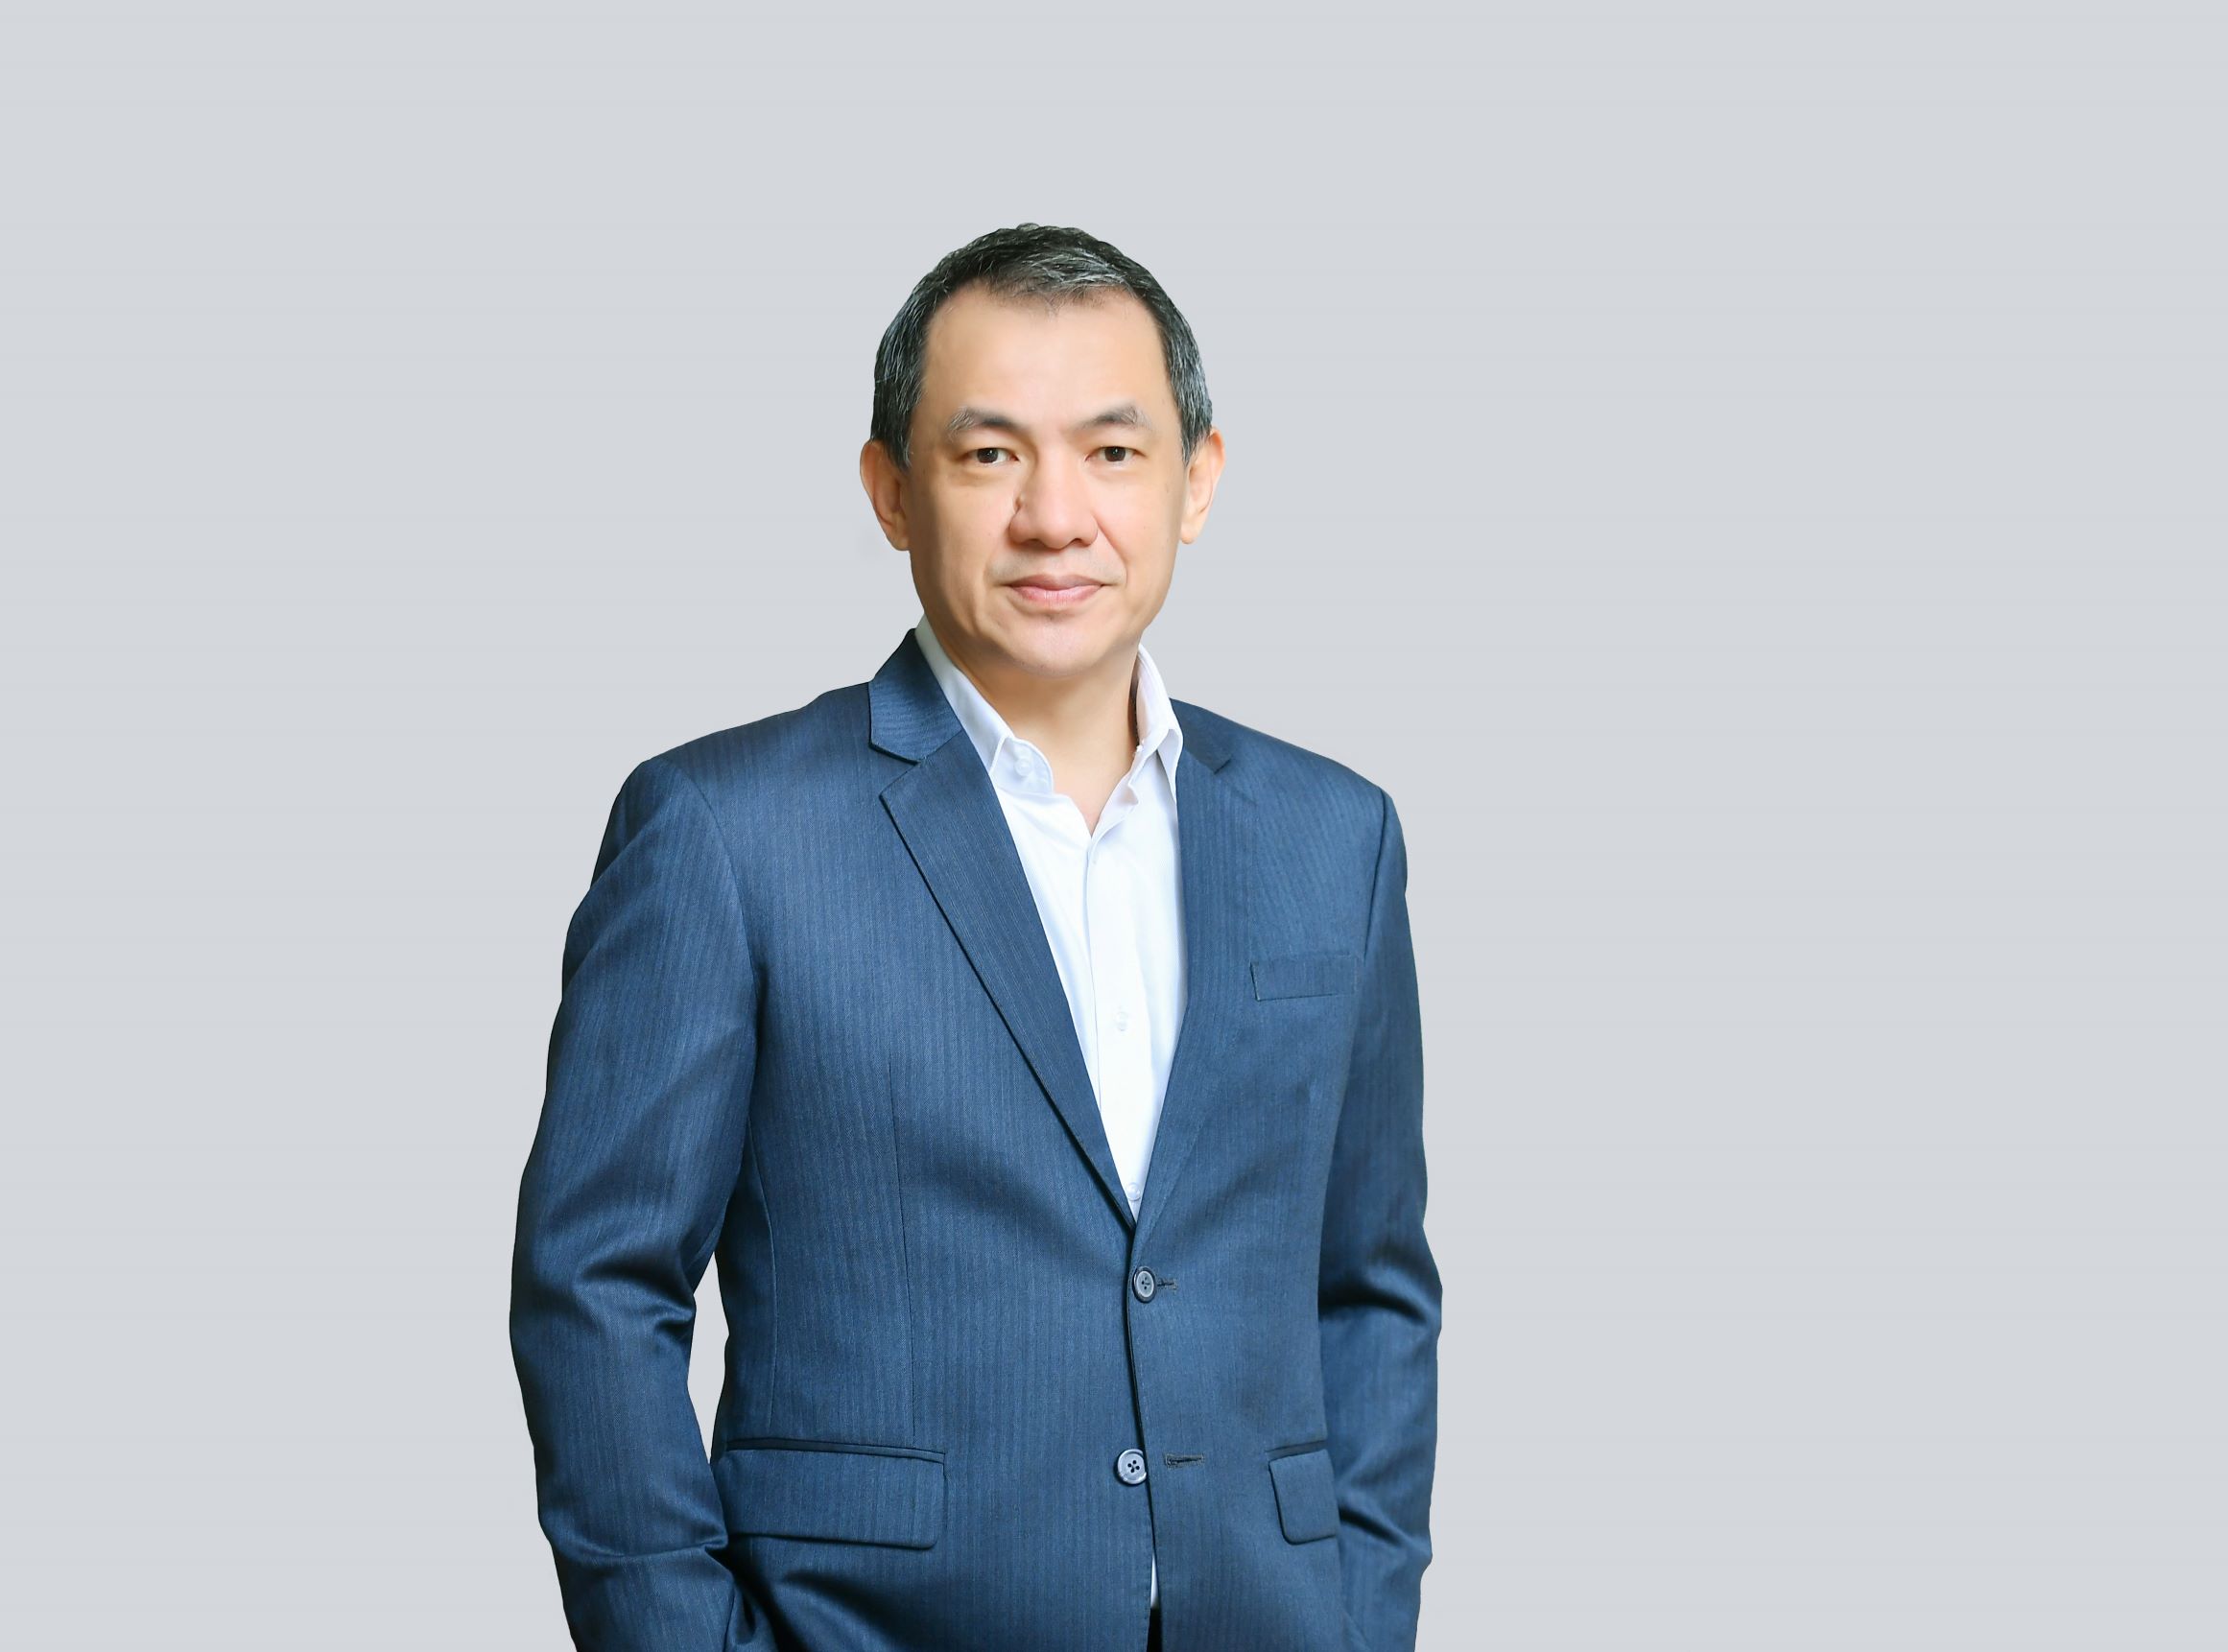 วีระ อารีรัตนศักดิ์ ผู้อำนวยการภูมิภาค ไทย อินโดจีน และฟิลิปปินส์ บริษัท เน็ตแอพ (NetApp)